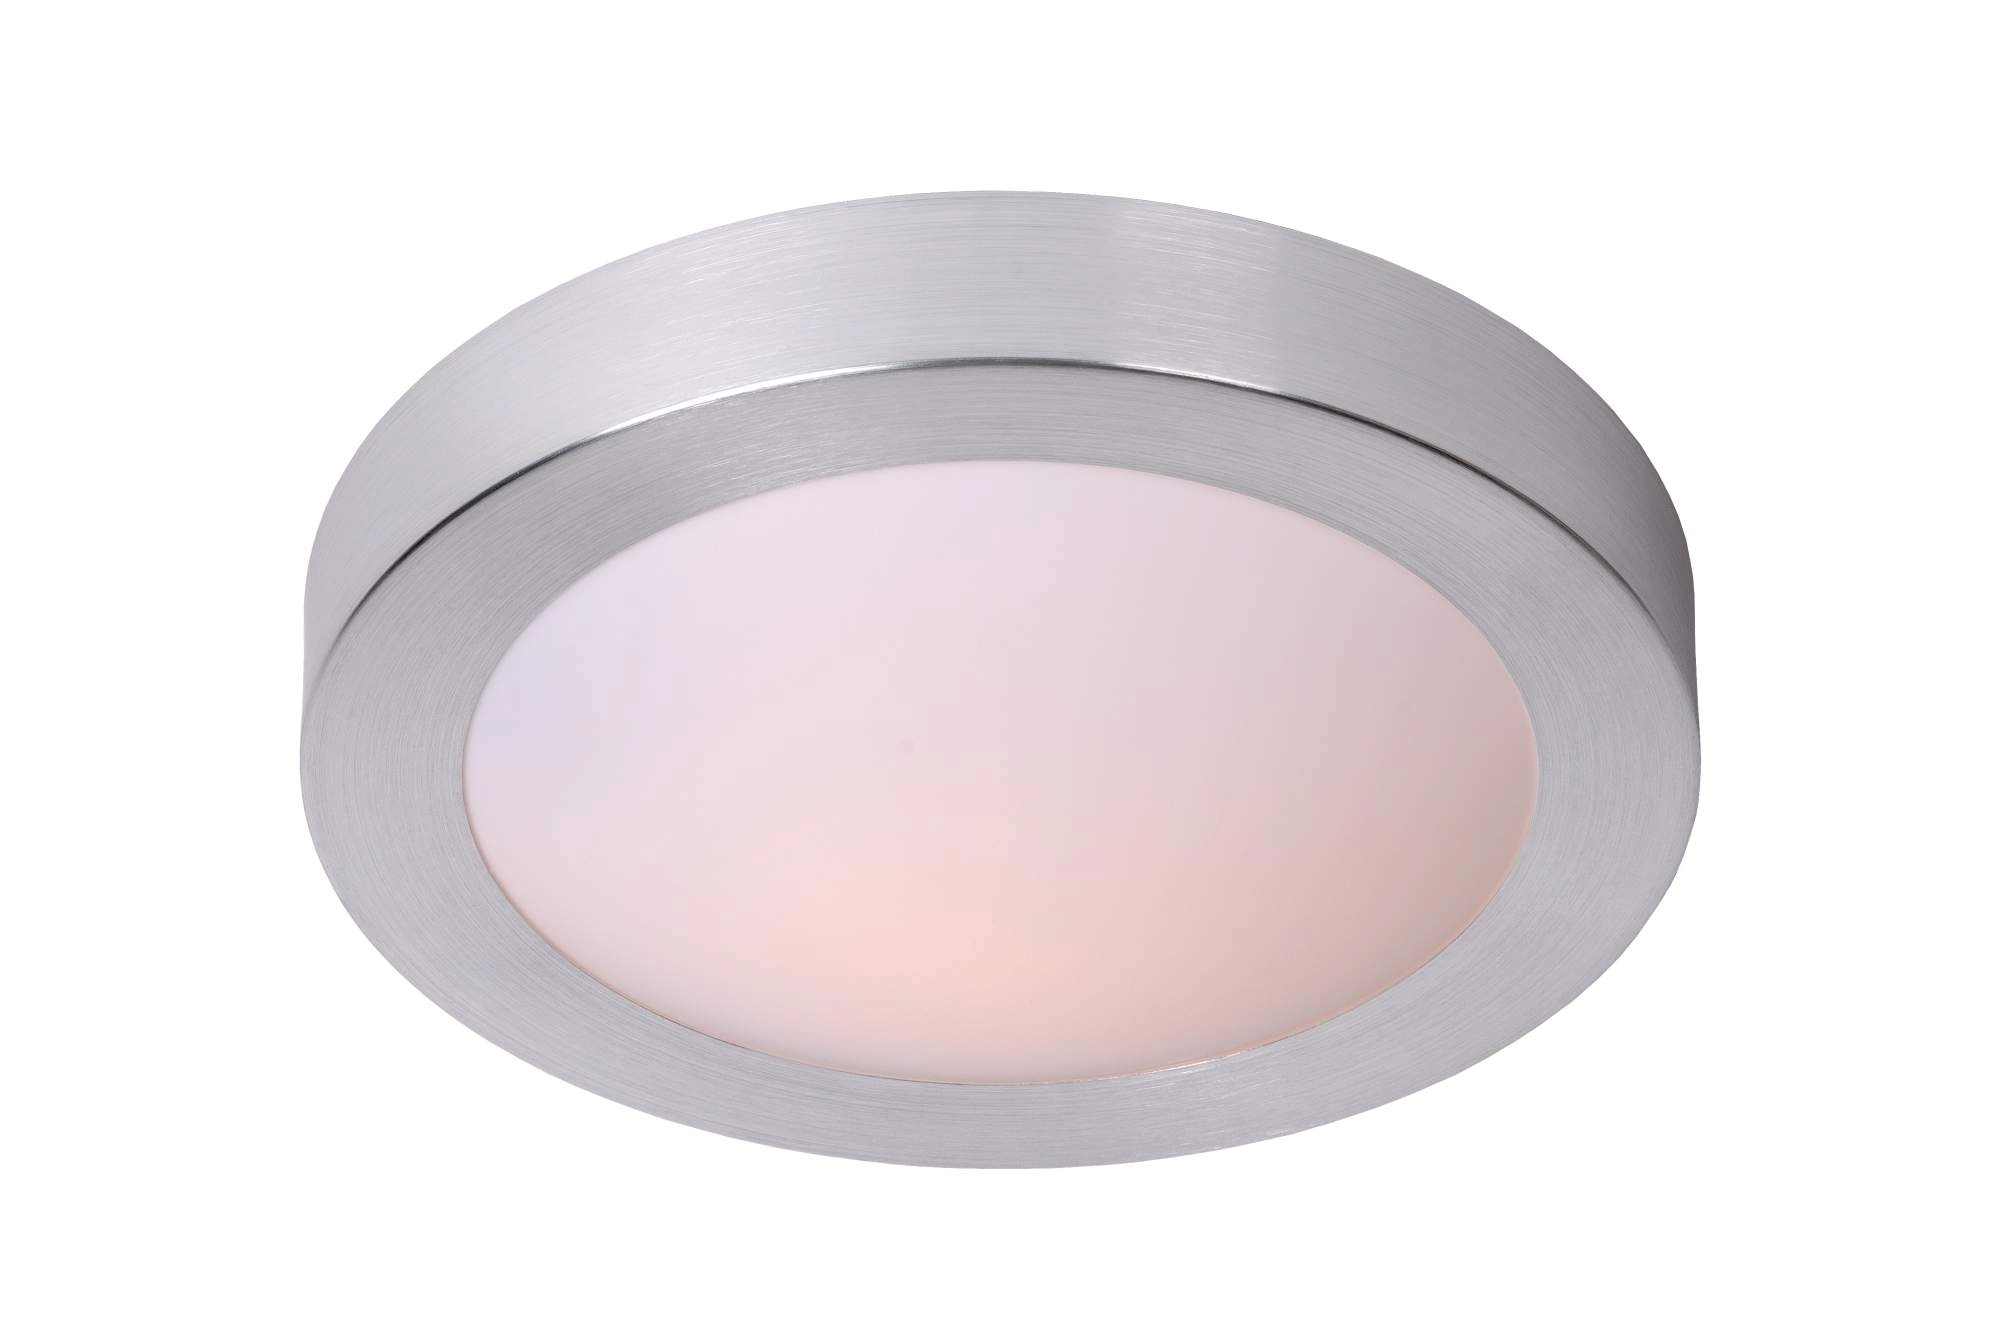 LU 79158/01/12 Lucide FRESH - Flush ceiling light Bathroom - Ø 27 cm - 1xE27 - IP44 - Satin Chrome